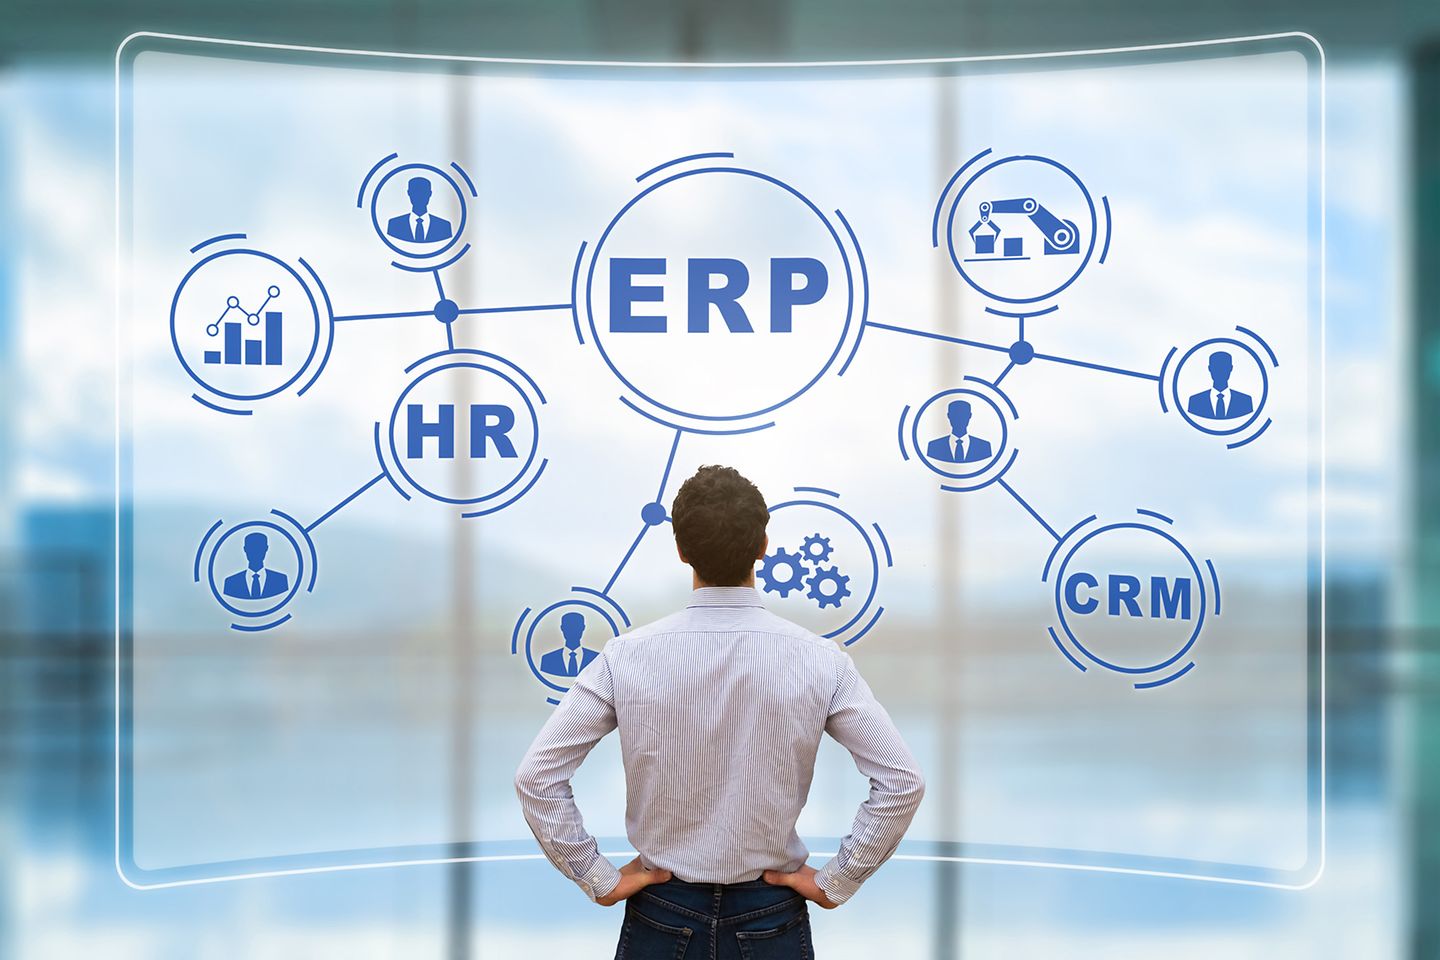 Mann schaut auf digitale Wand, auf der Mindmap zu sehen ist mit Begriffen wie ERP, HR, CRM.